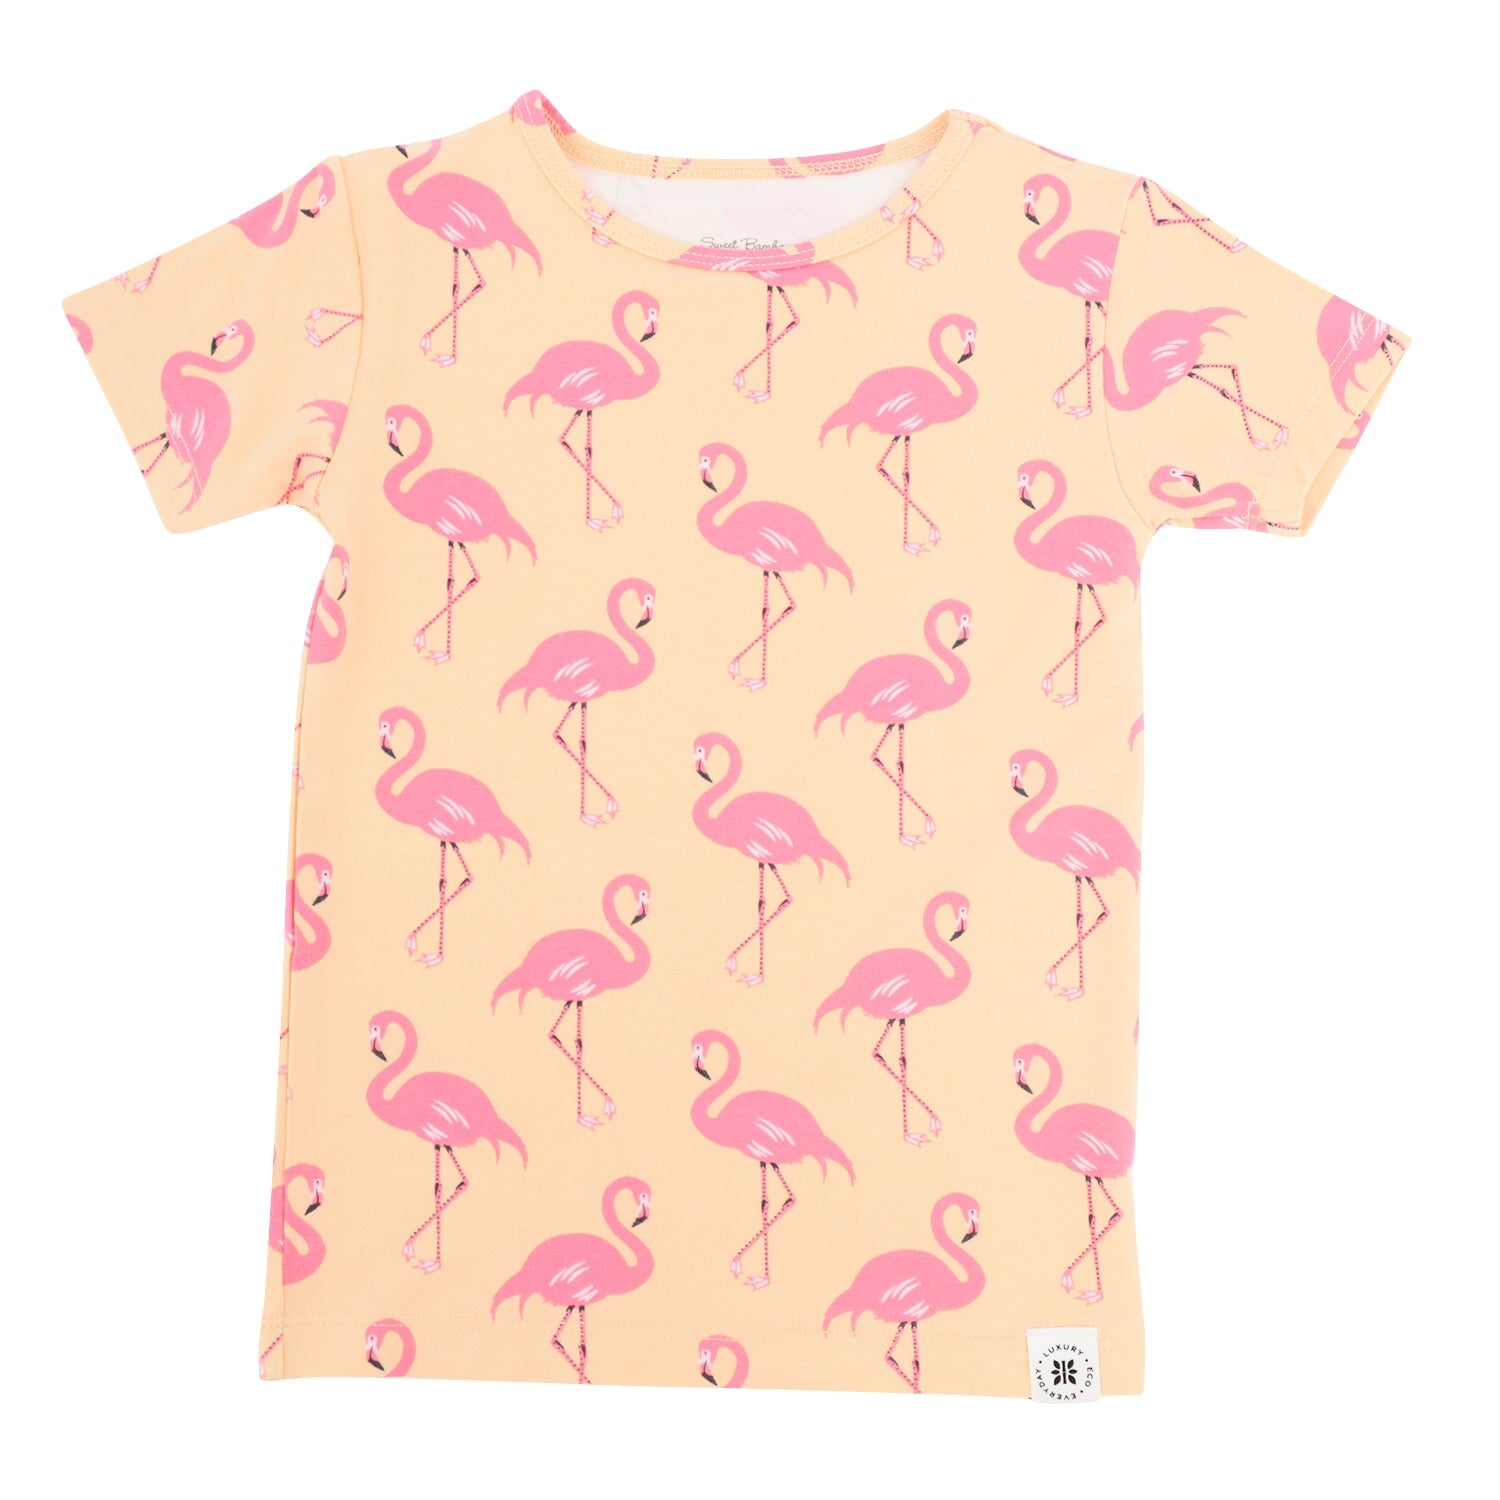 Summer Pj - Flamingo Peach